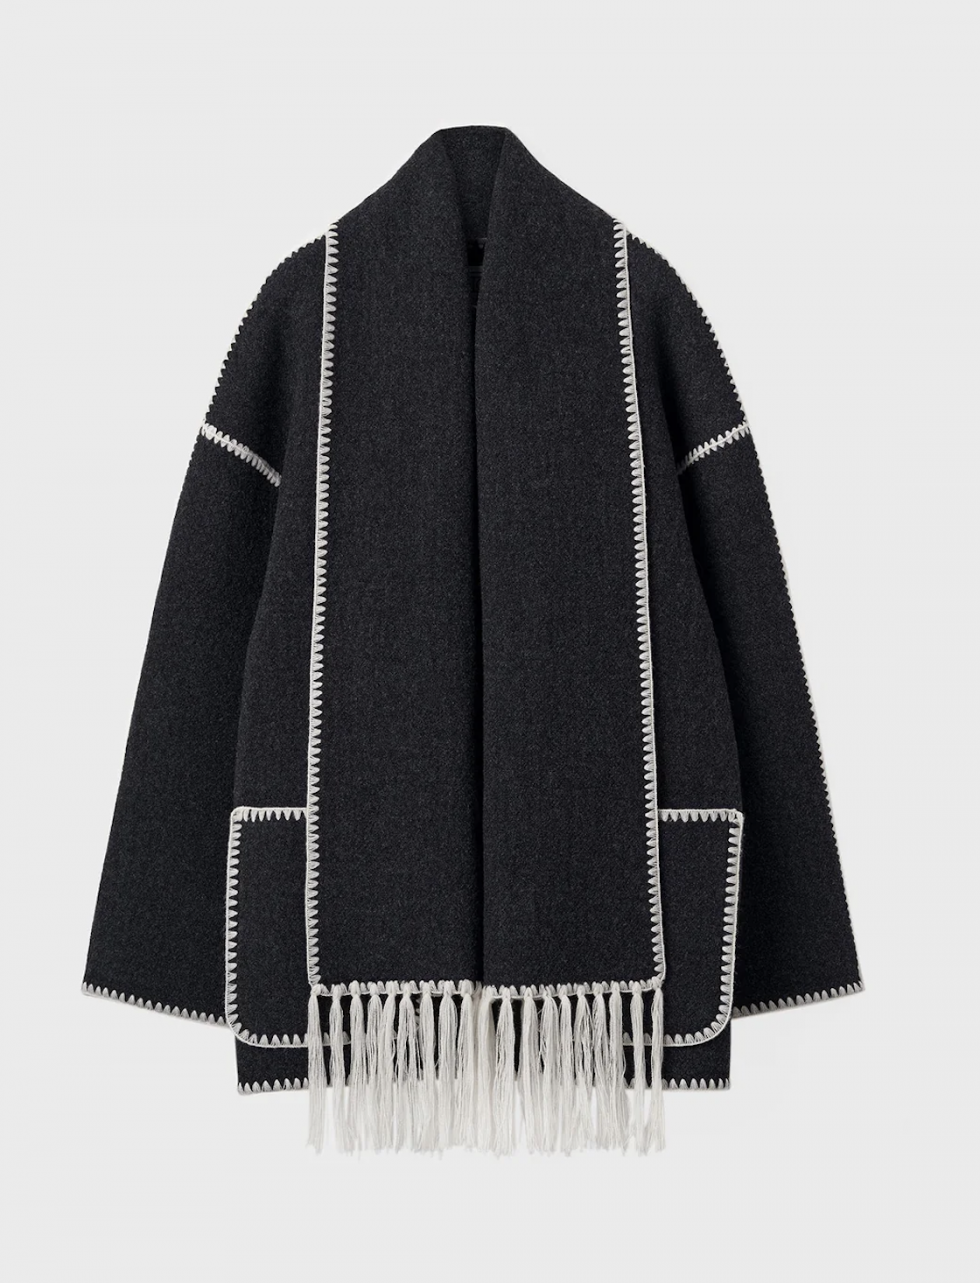 El abrigo-bufanda de Totem